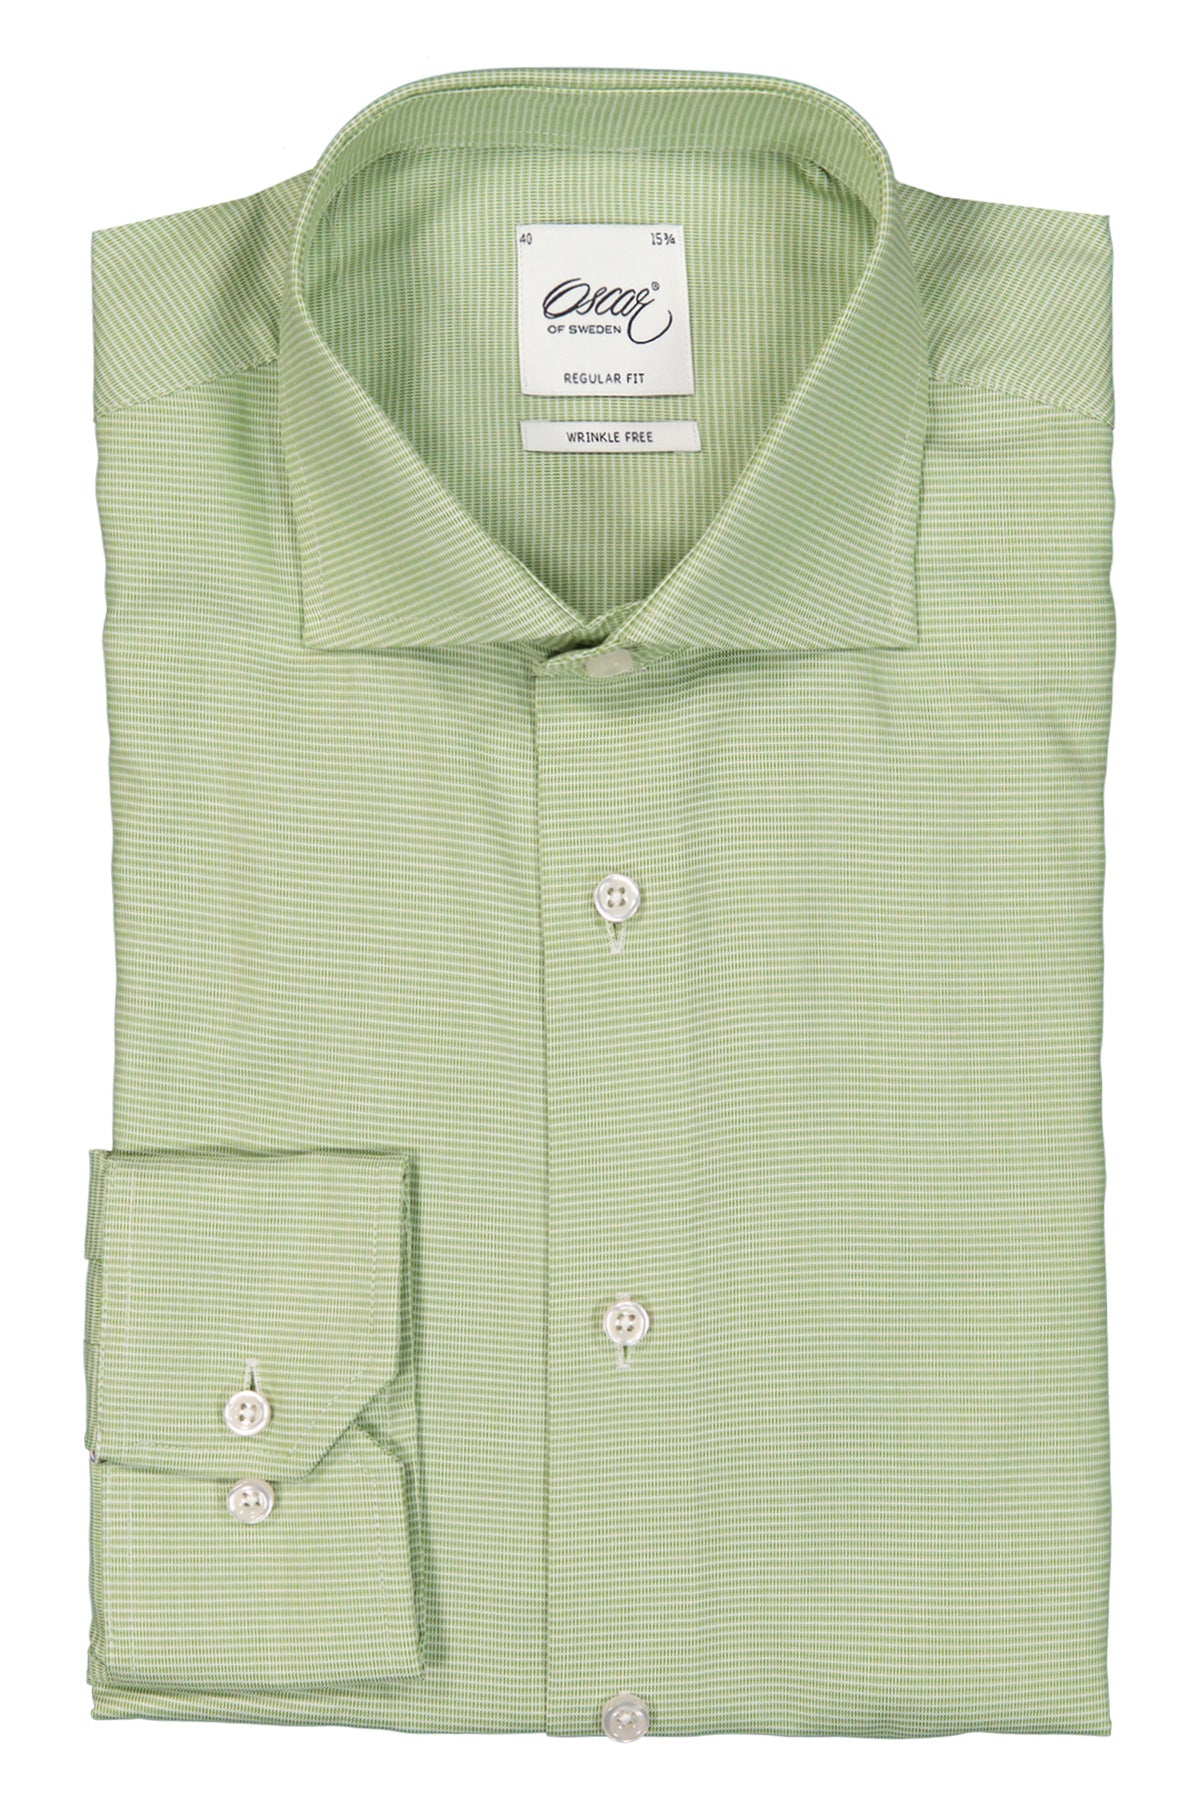 Green regular fit shirt